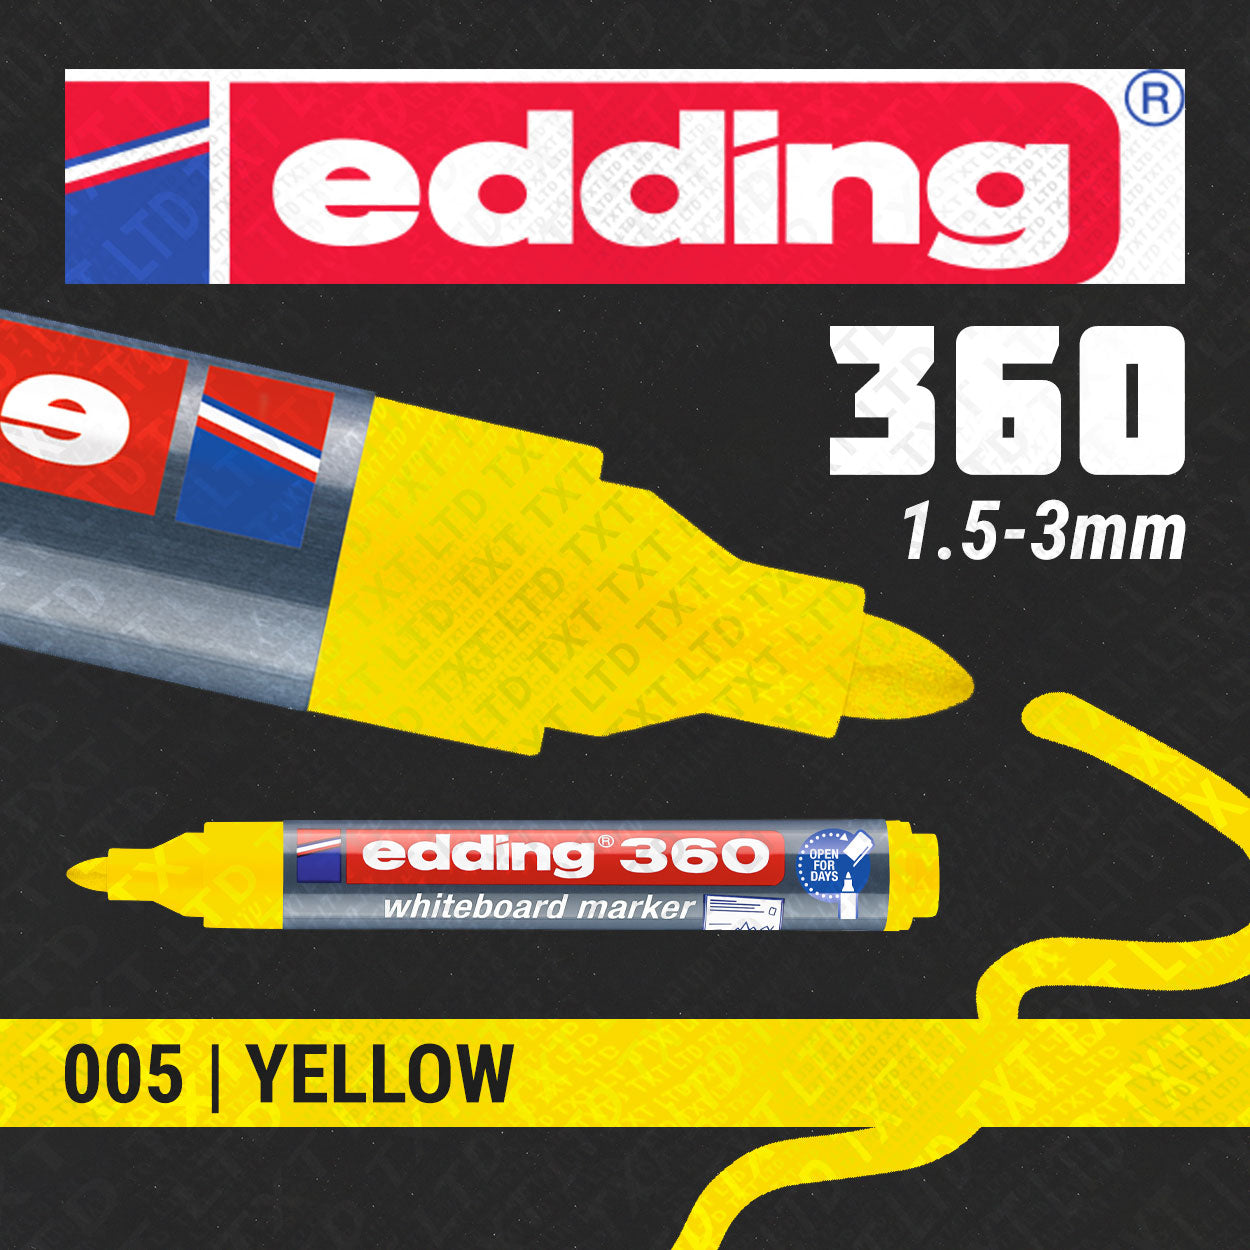 edding 360 Whiteboard/Flipchart Marker